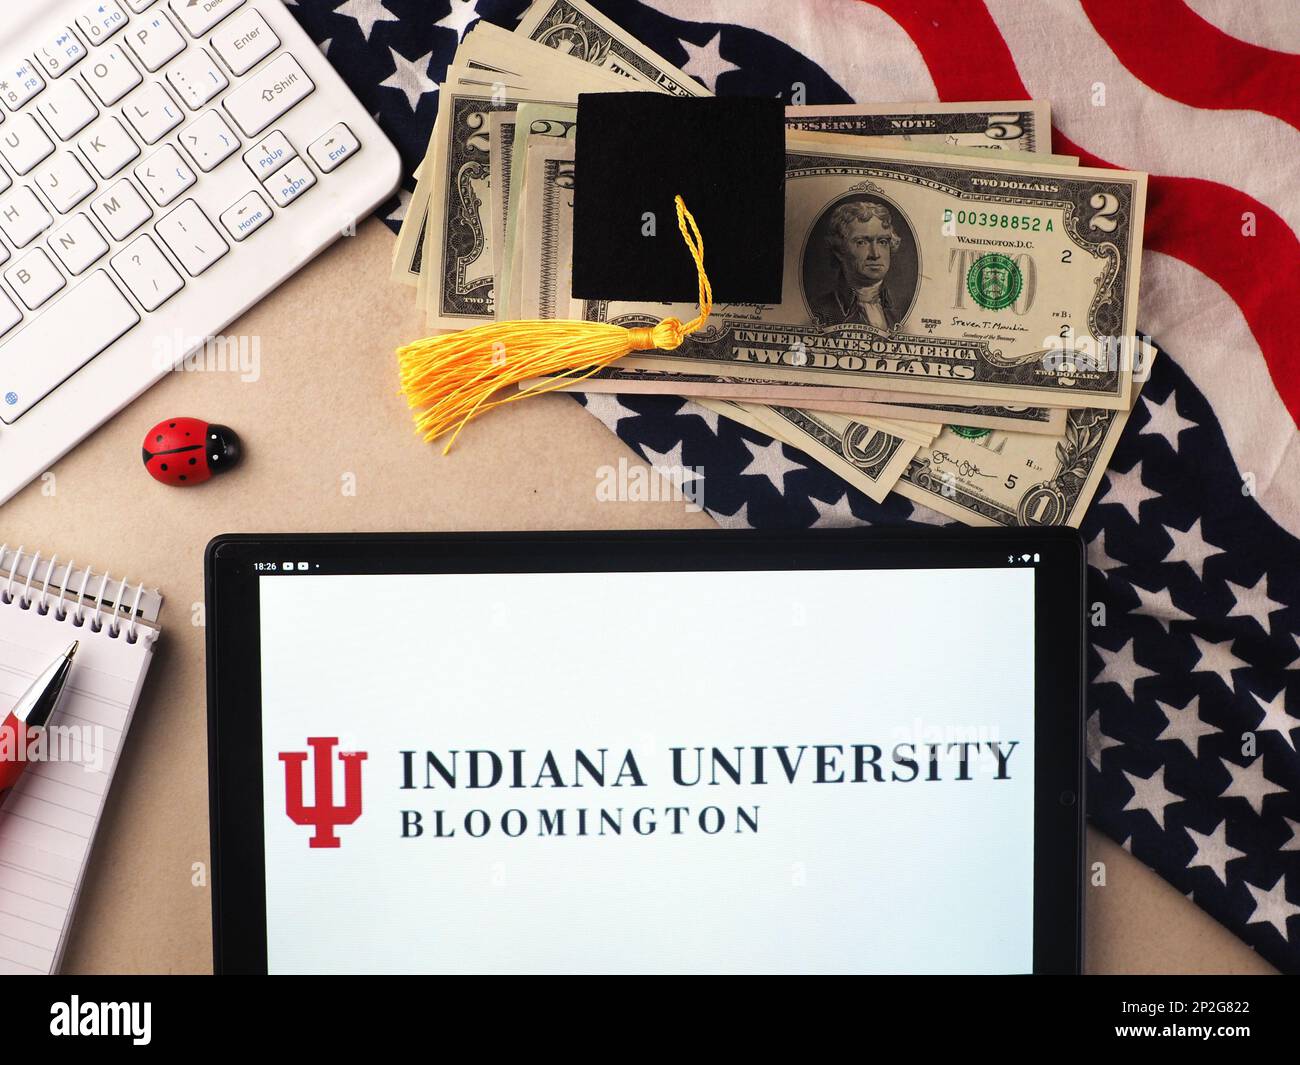 Dans cette illustration, le logo Bloomington de l'Indiana University est affiché sur une tablette. Banque D'Images